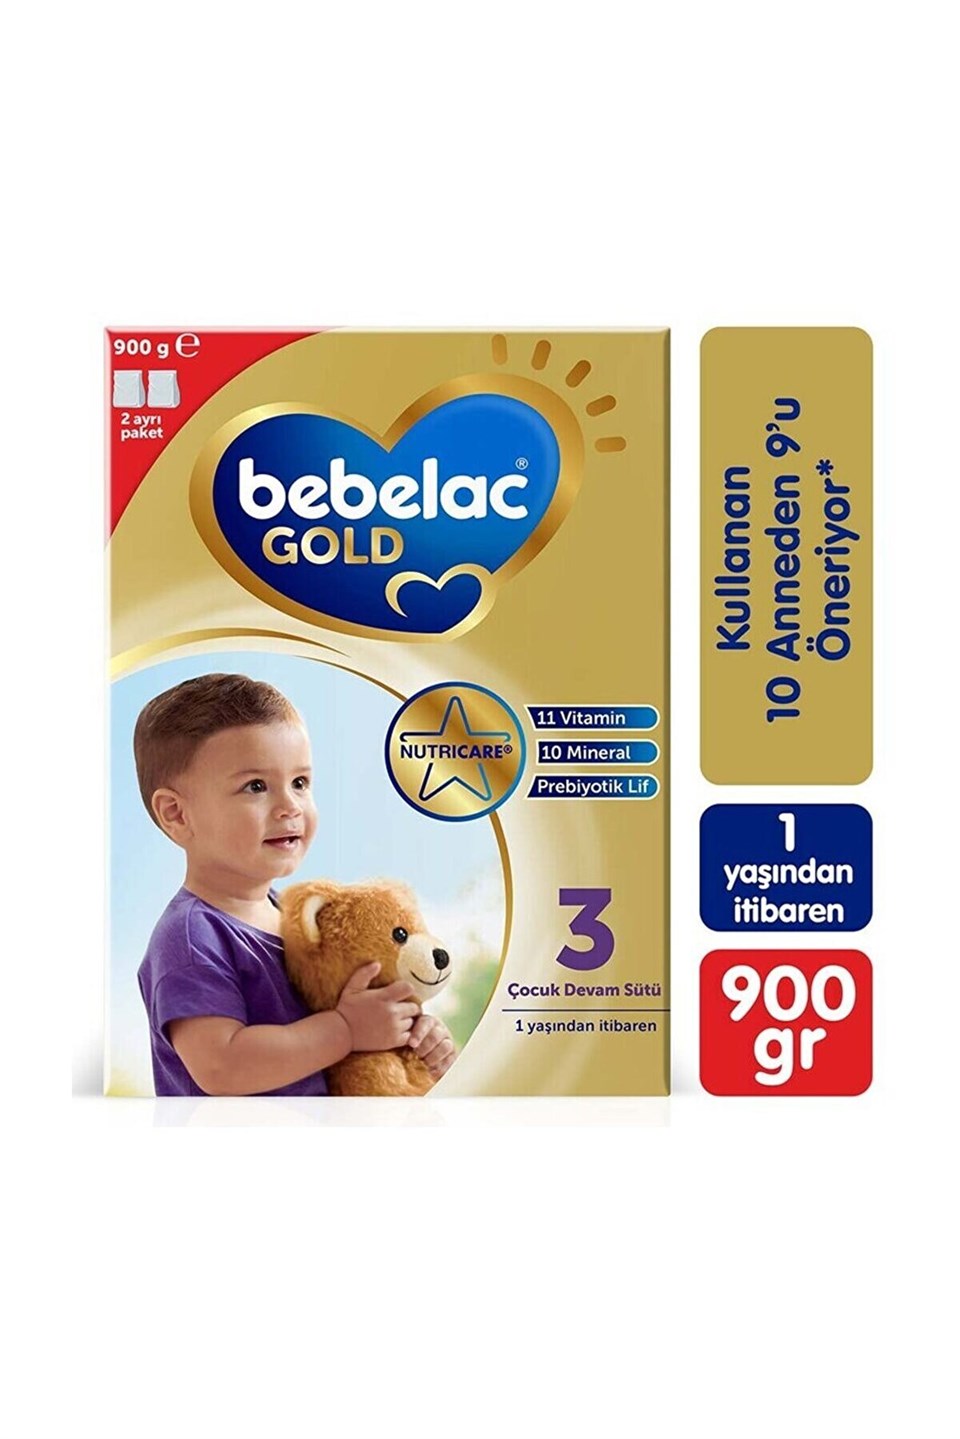 Bebelac Gold 3 Çocuk Devam Sütü 900 gr 1 Yaşından İtibaren - tekyerdenal.com